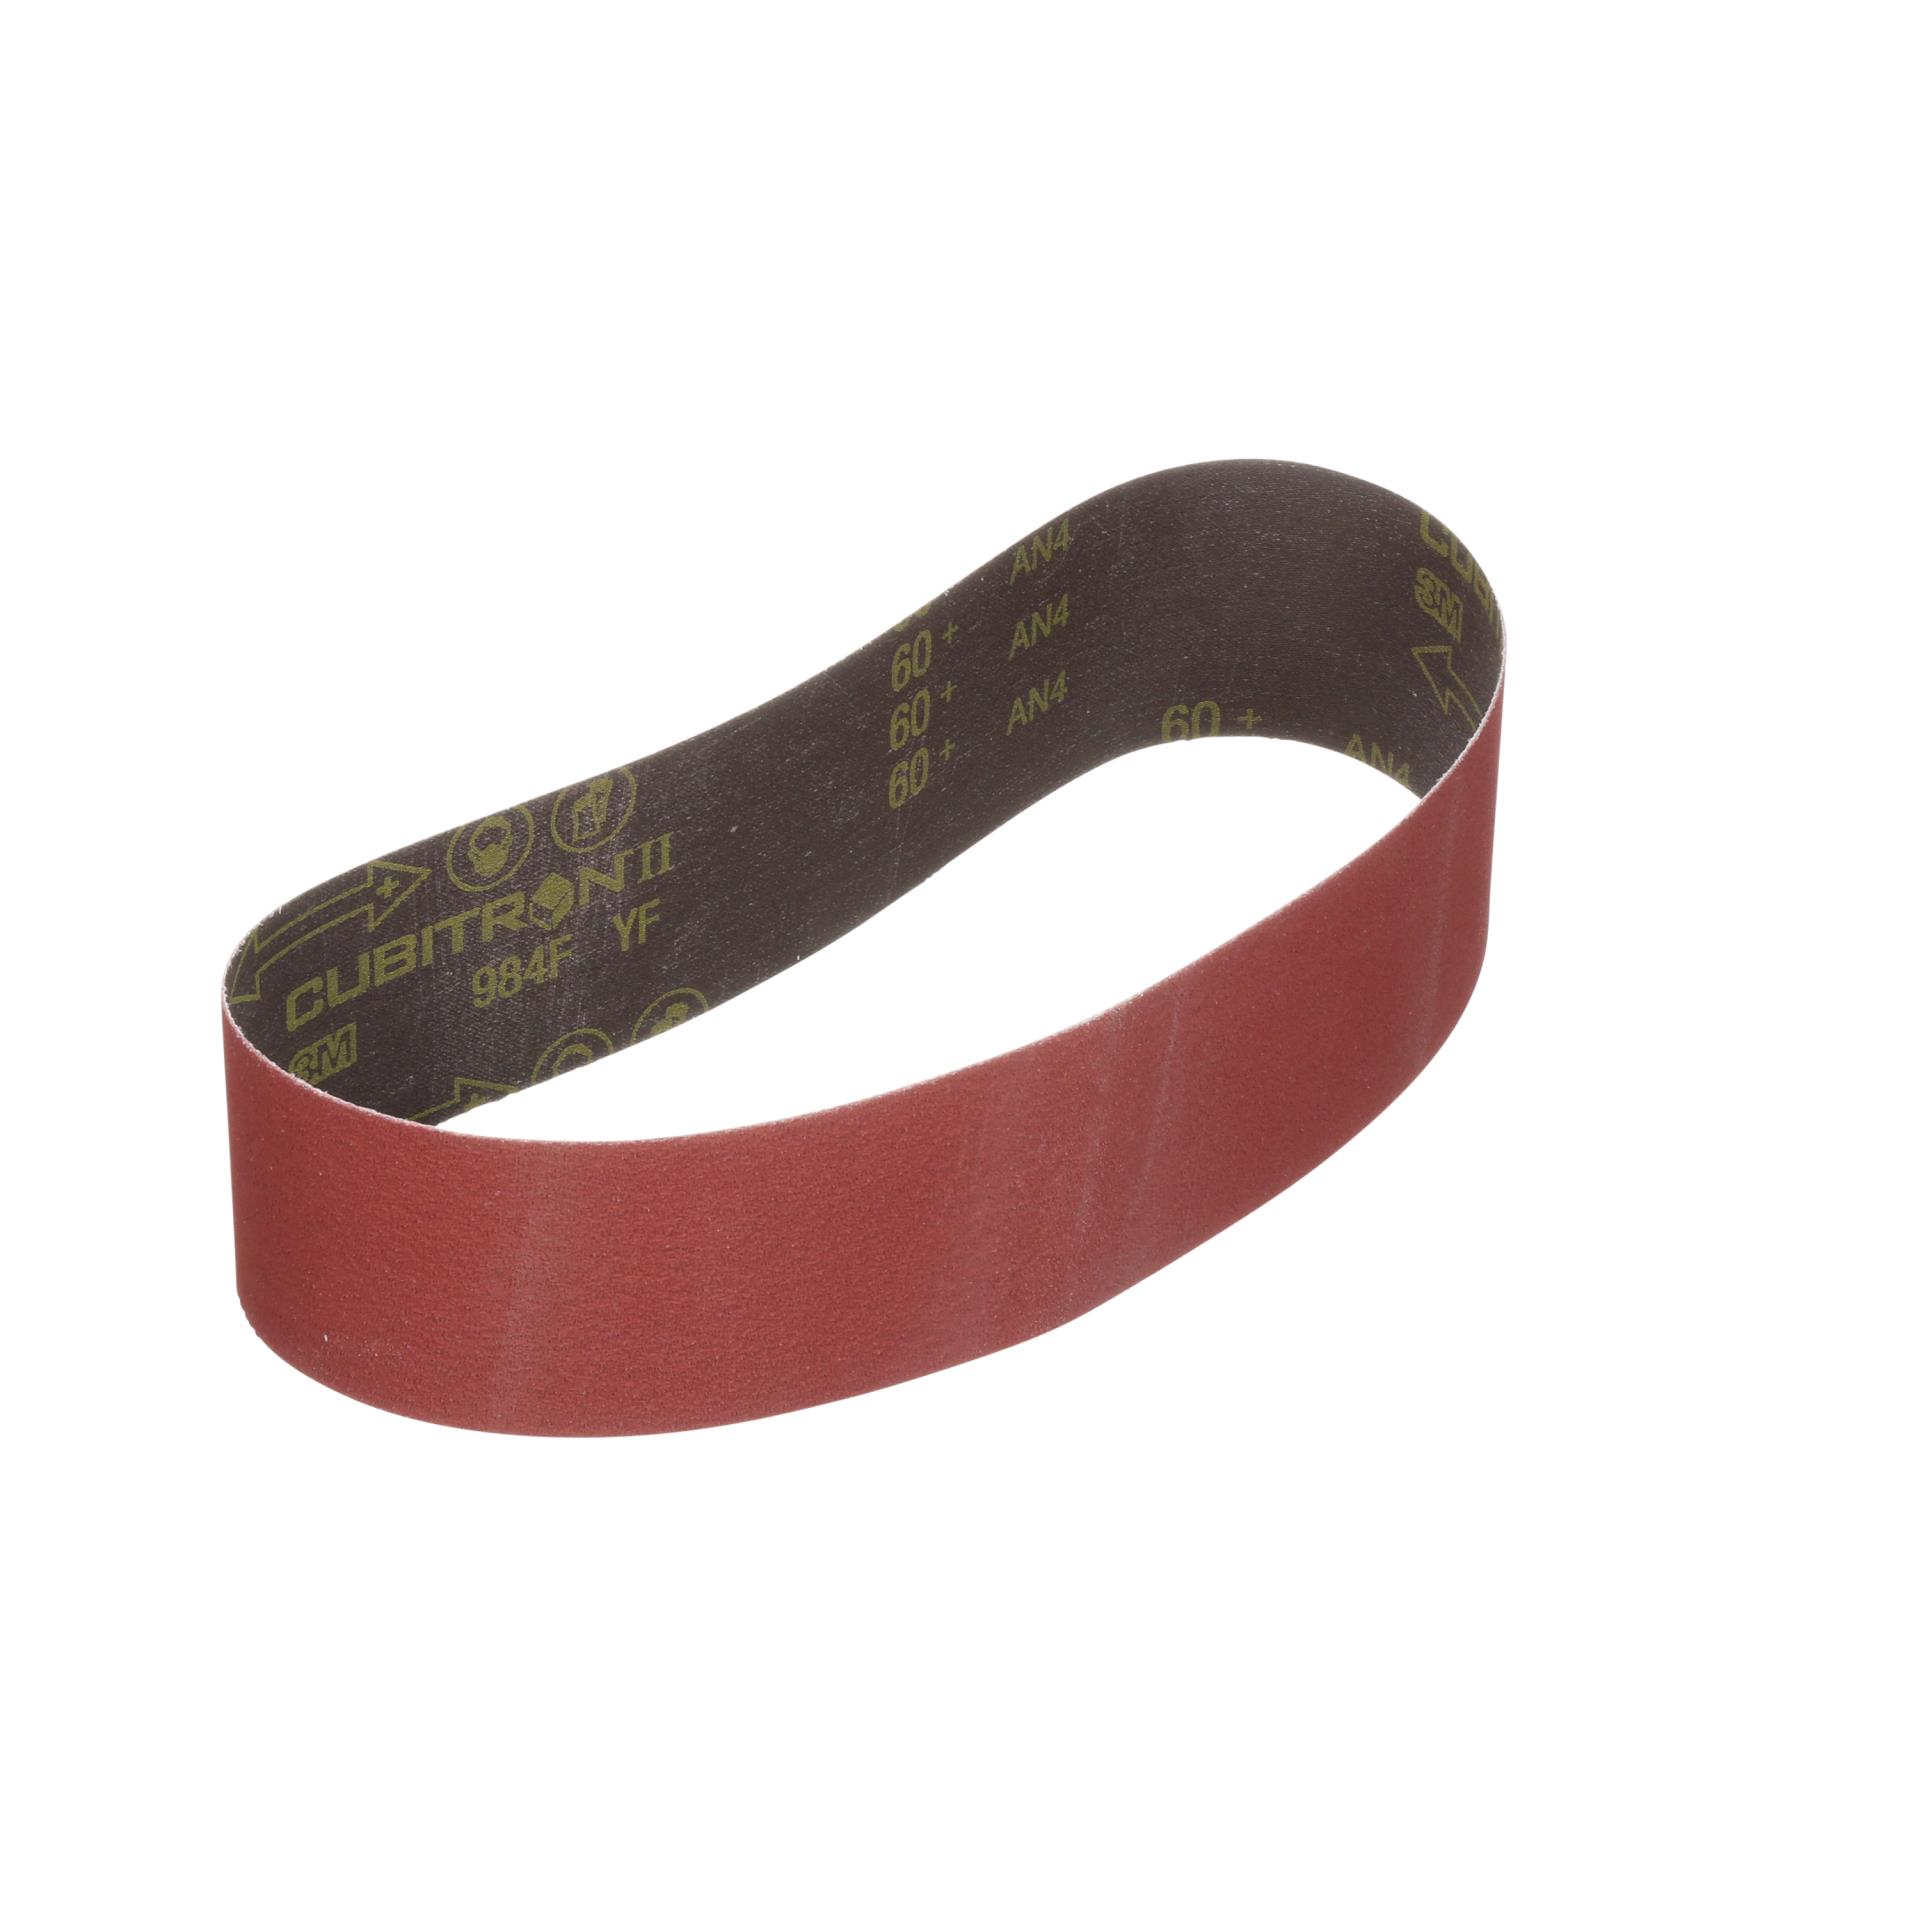 2"x72" Sanding Belts 120 Grit Premium Red "J" Flex 5pcs 